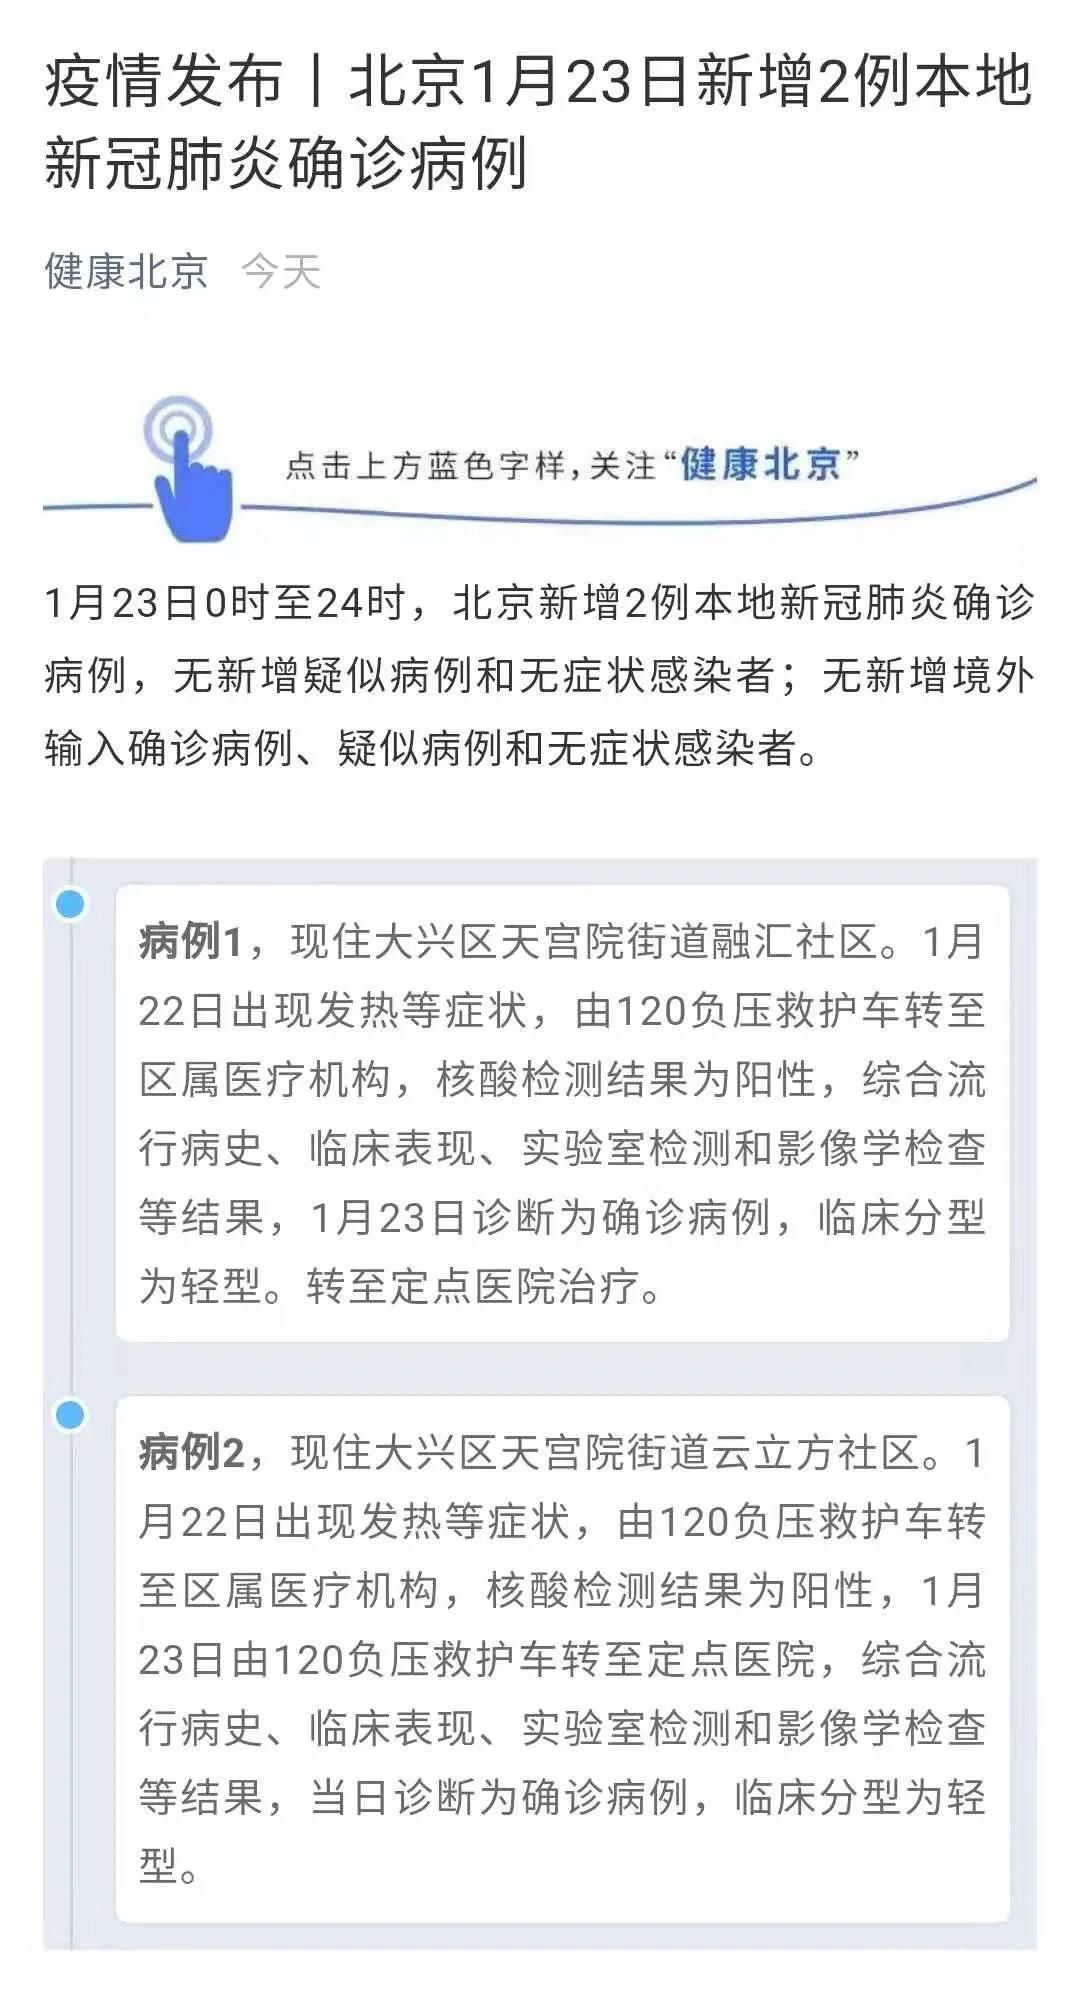 “只提地点不提人”，上海北京通报确诊病例保护患者隐私的做法收获多方点赞